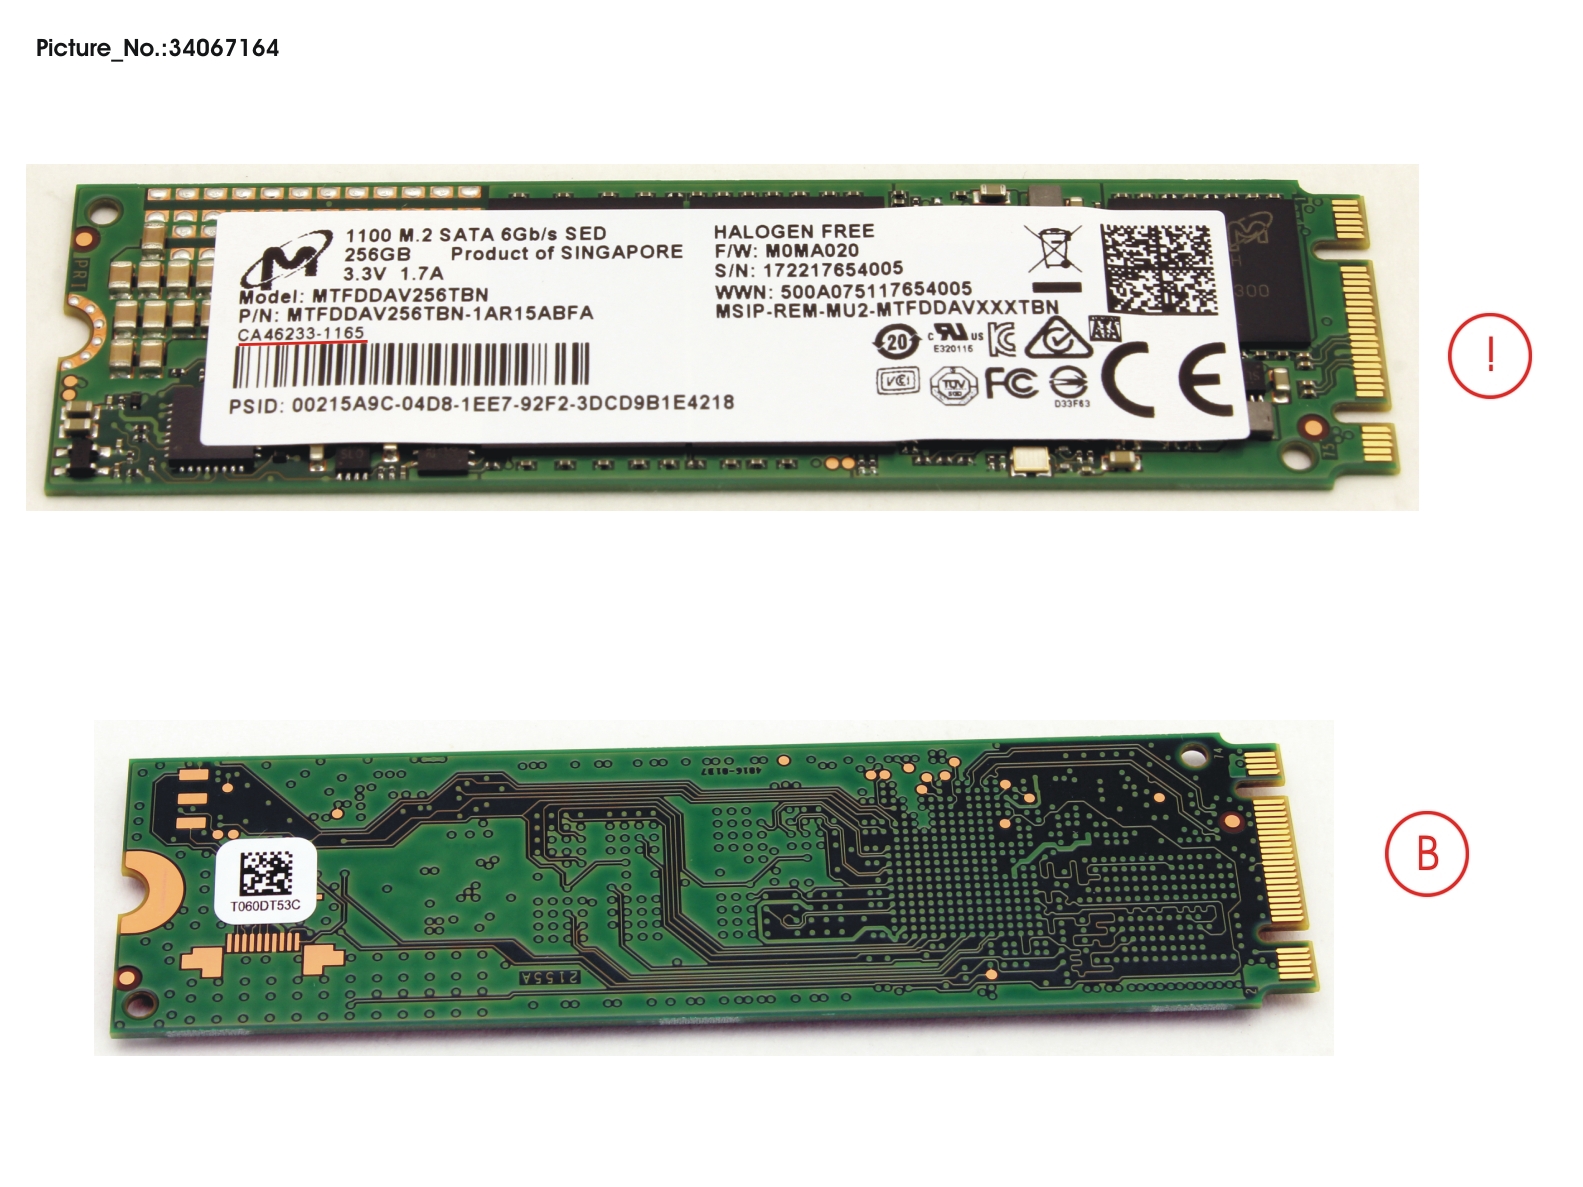 SSD S3 M.2 2280 MOI 1100 256GB(OPAL)